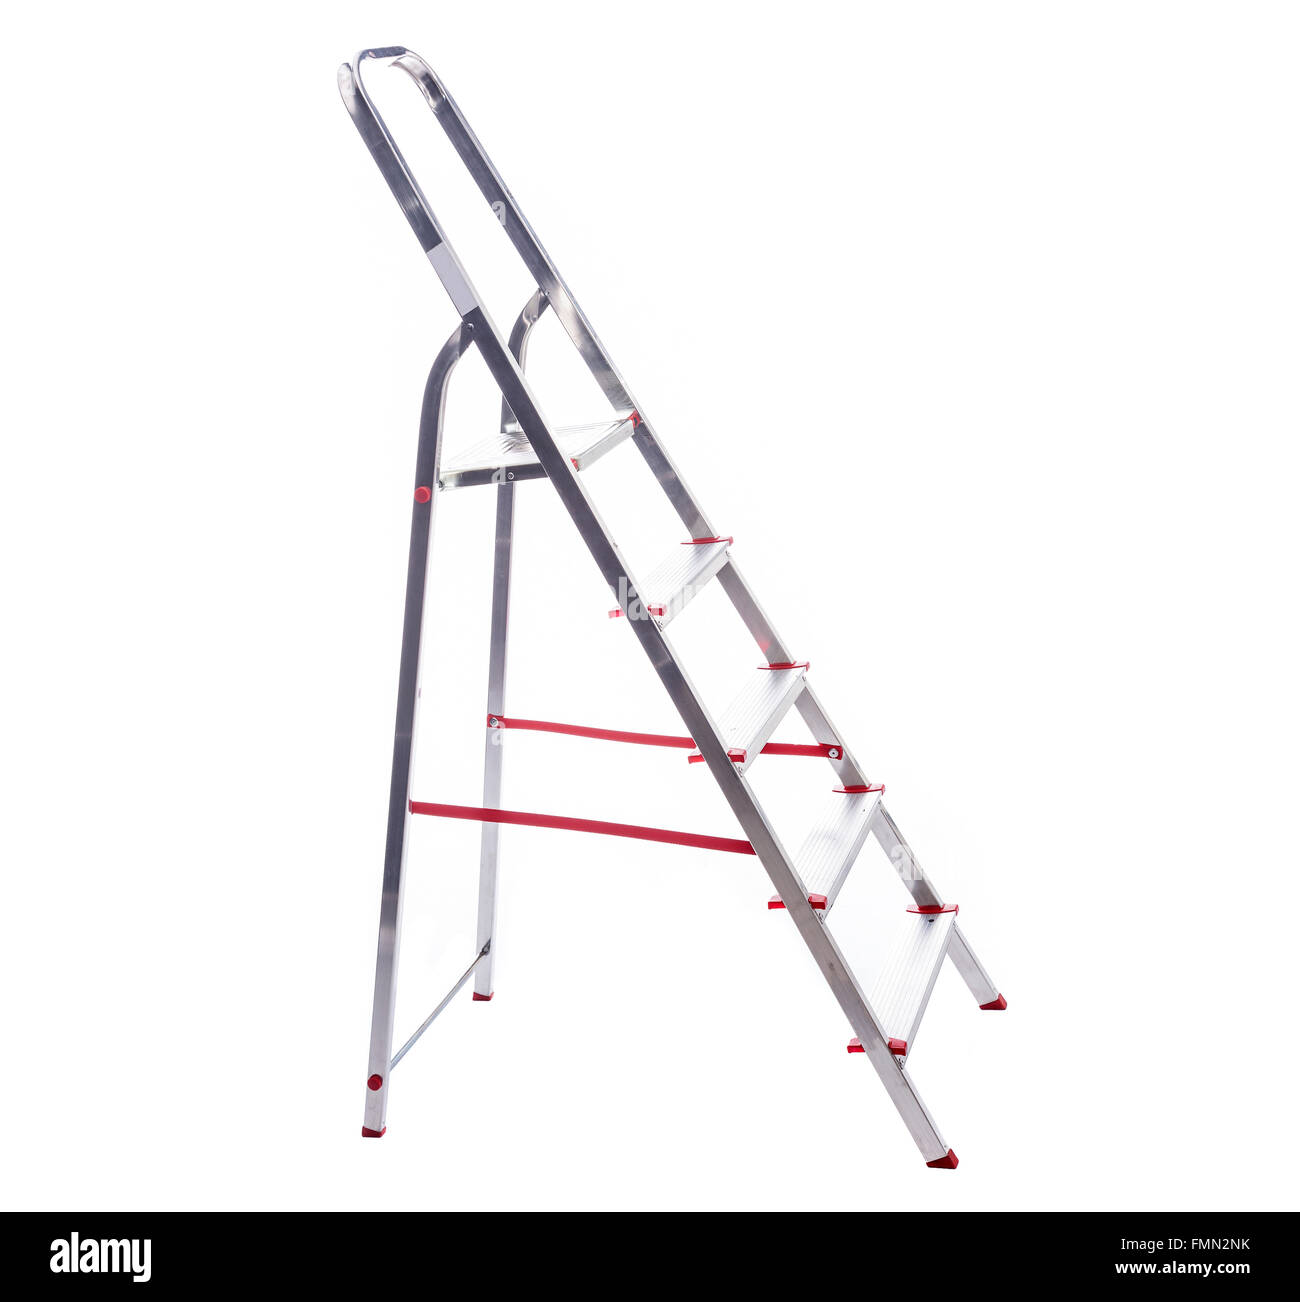 Aluminum ladder isolated on white background Stock Photo